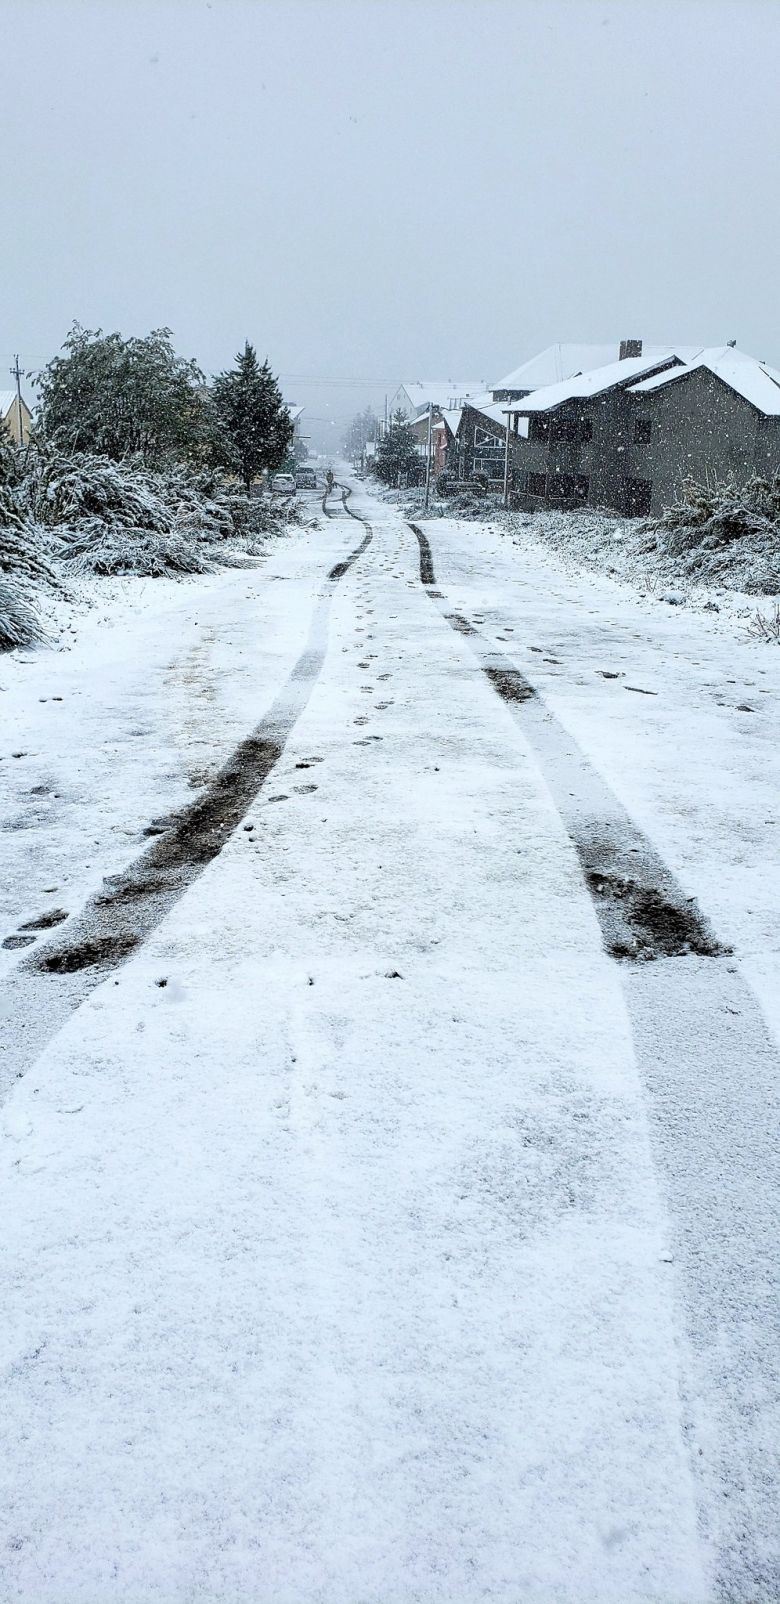 Neve transforma a paisagem em Neuqun, na Patagnia, nesta segunda metade de novembro. Crdito: Imagem divulgada pelo twitter @valecaviahue 